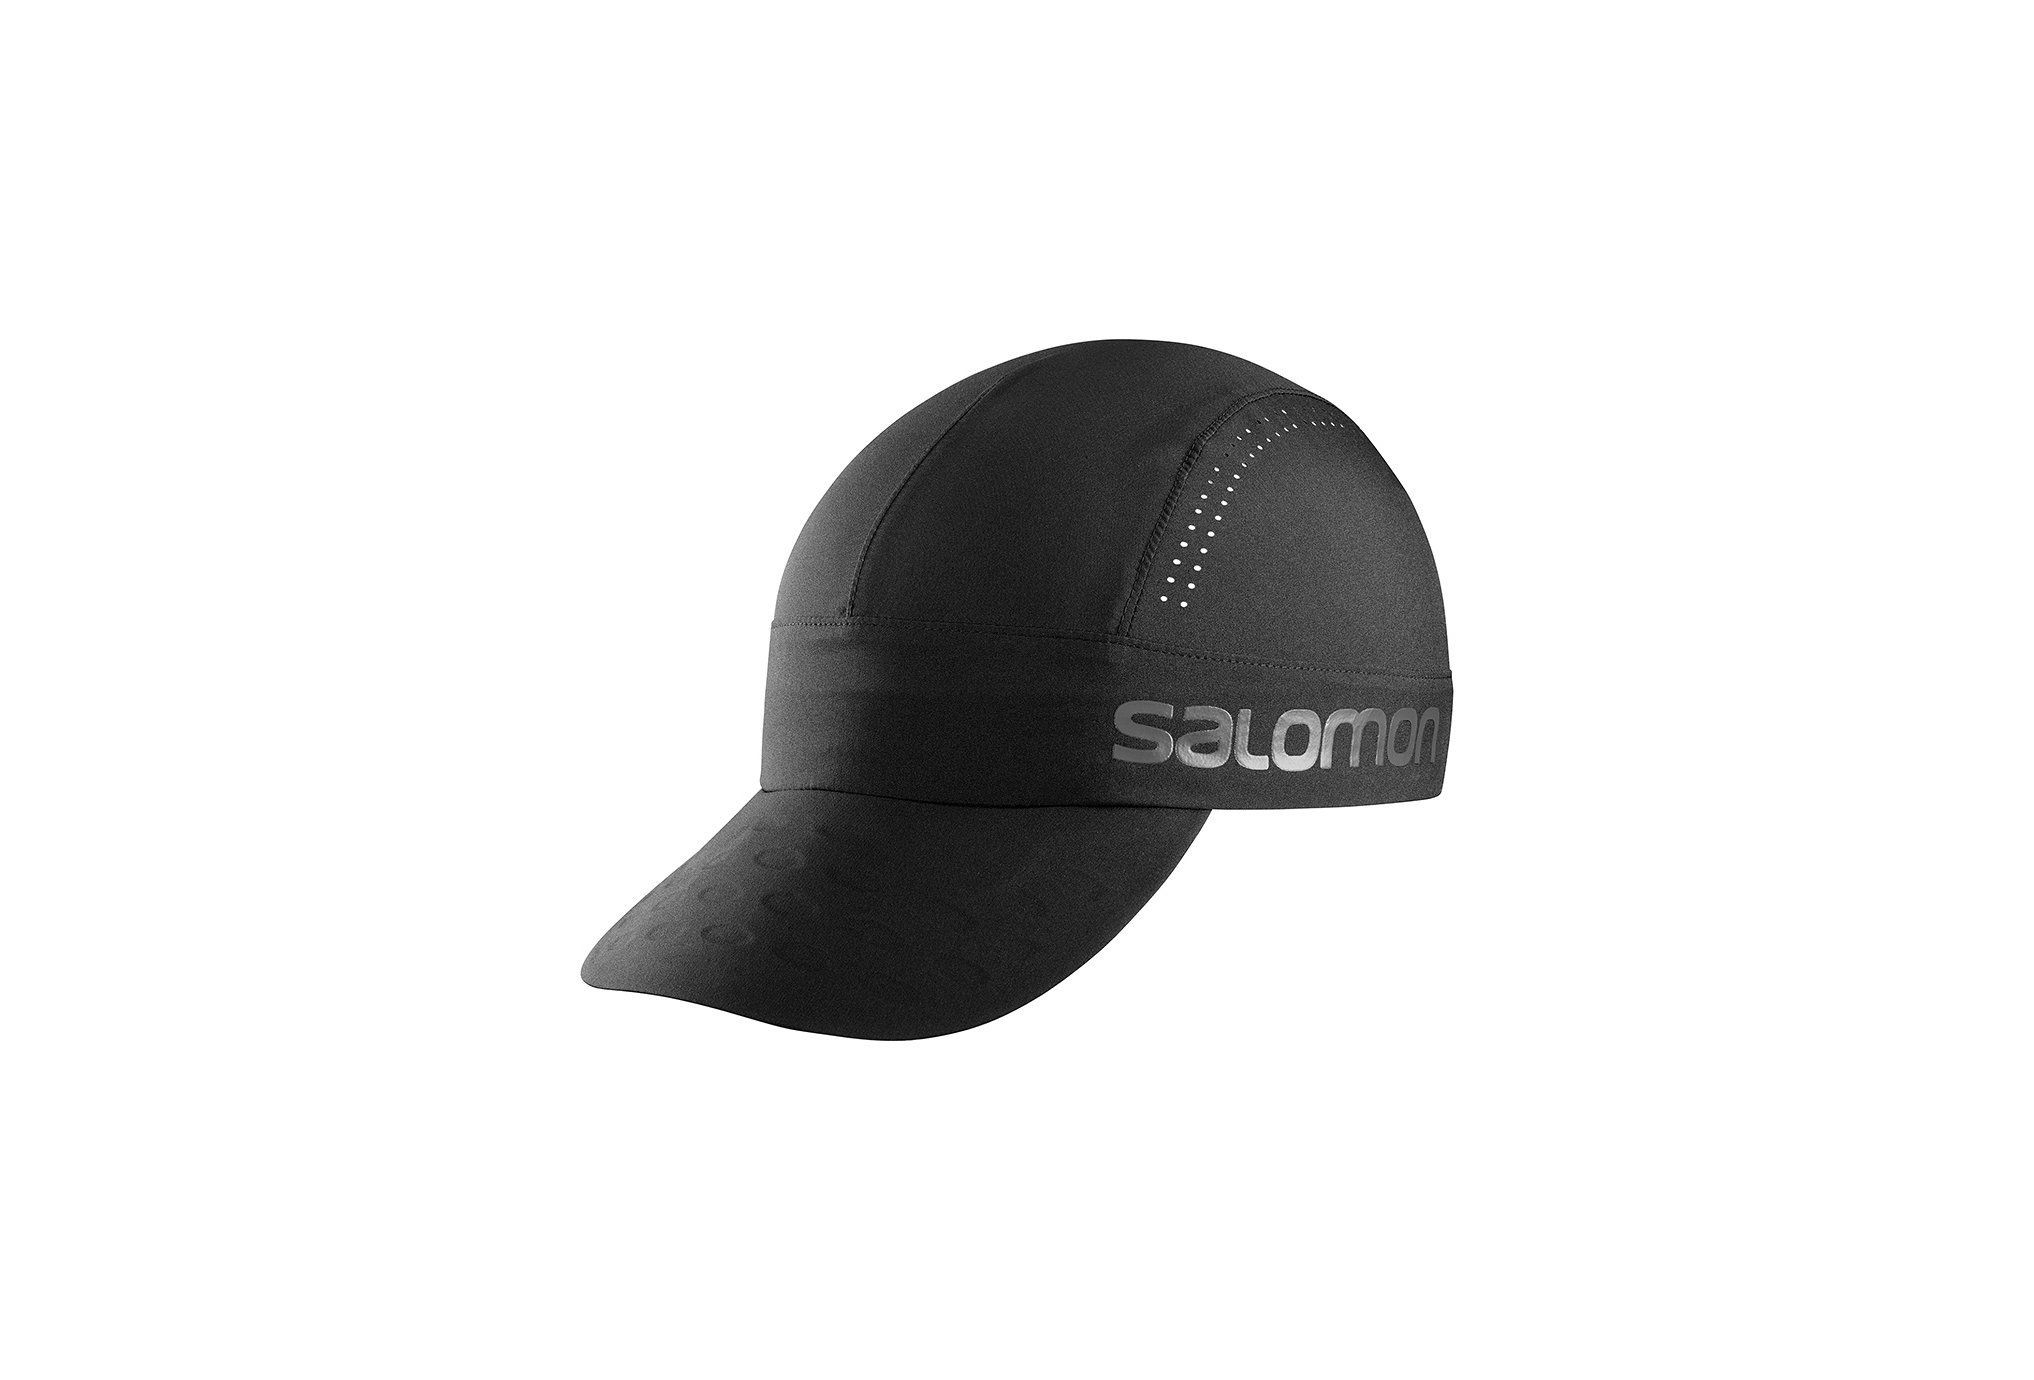 Salomon Race cap casquettes / bandeaux